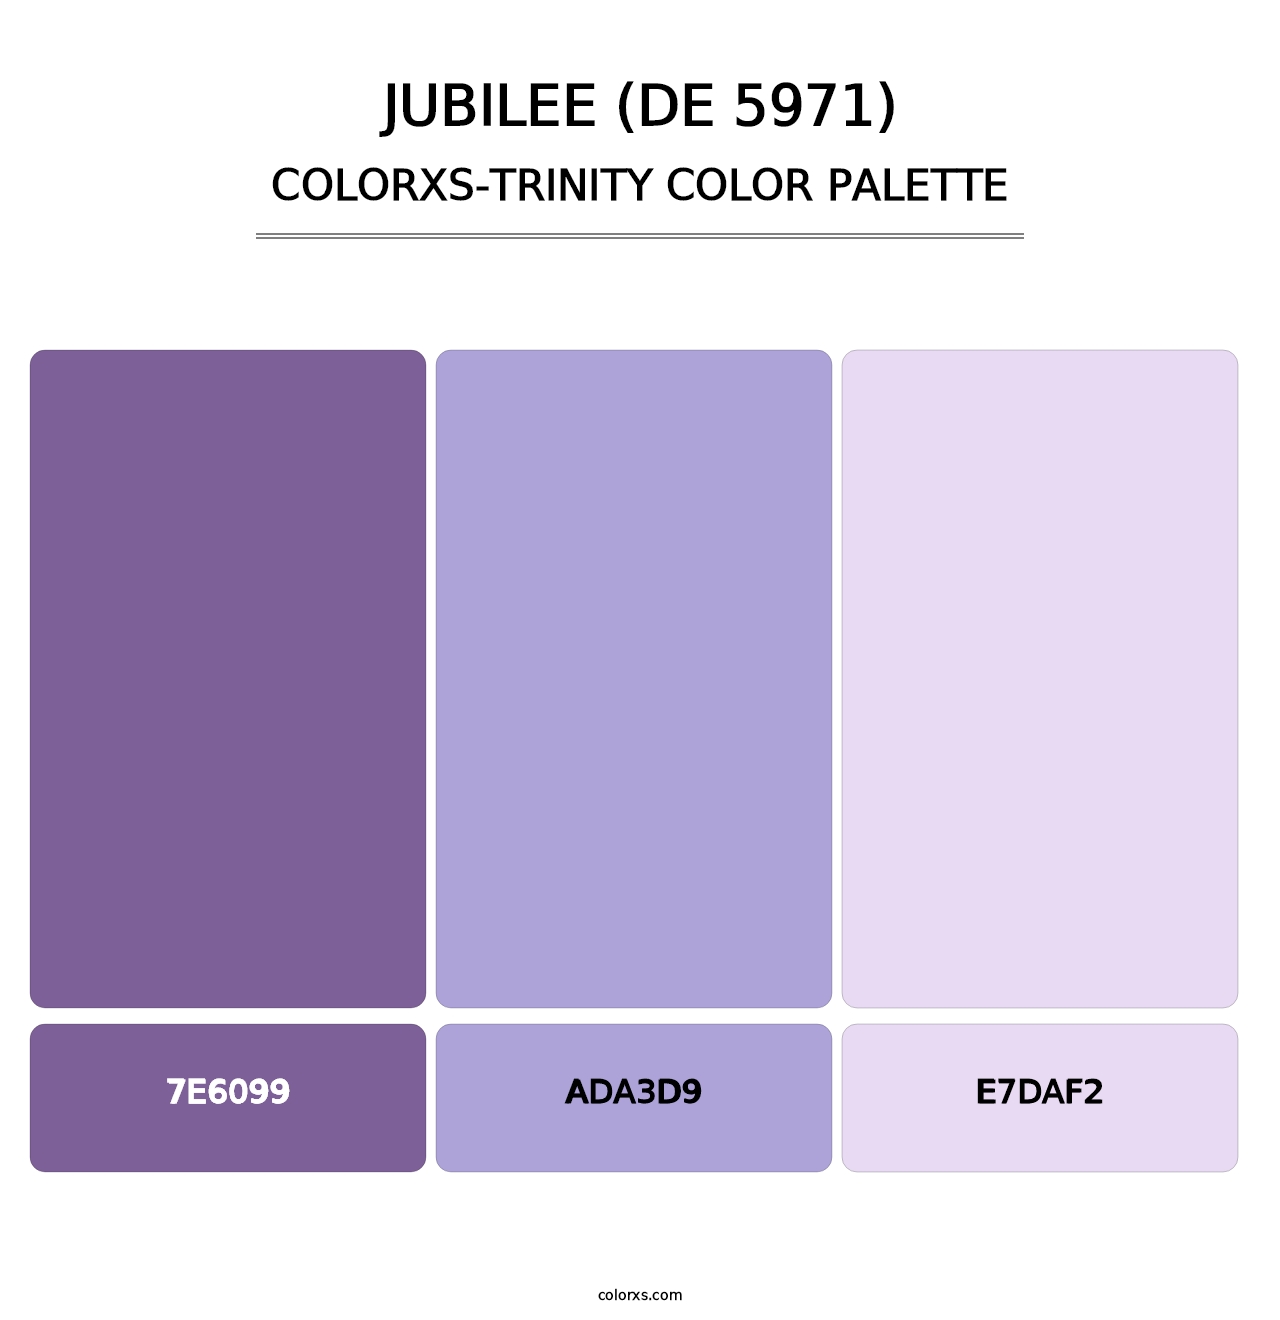 Jubilee (DE 5971) - Colorxs Trinity Palette